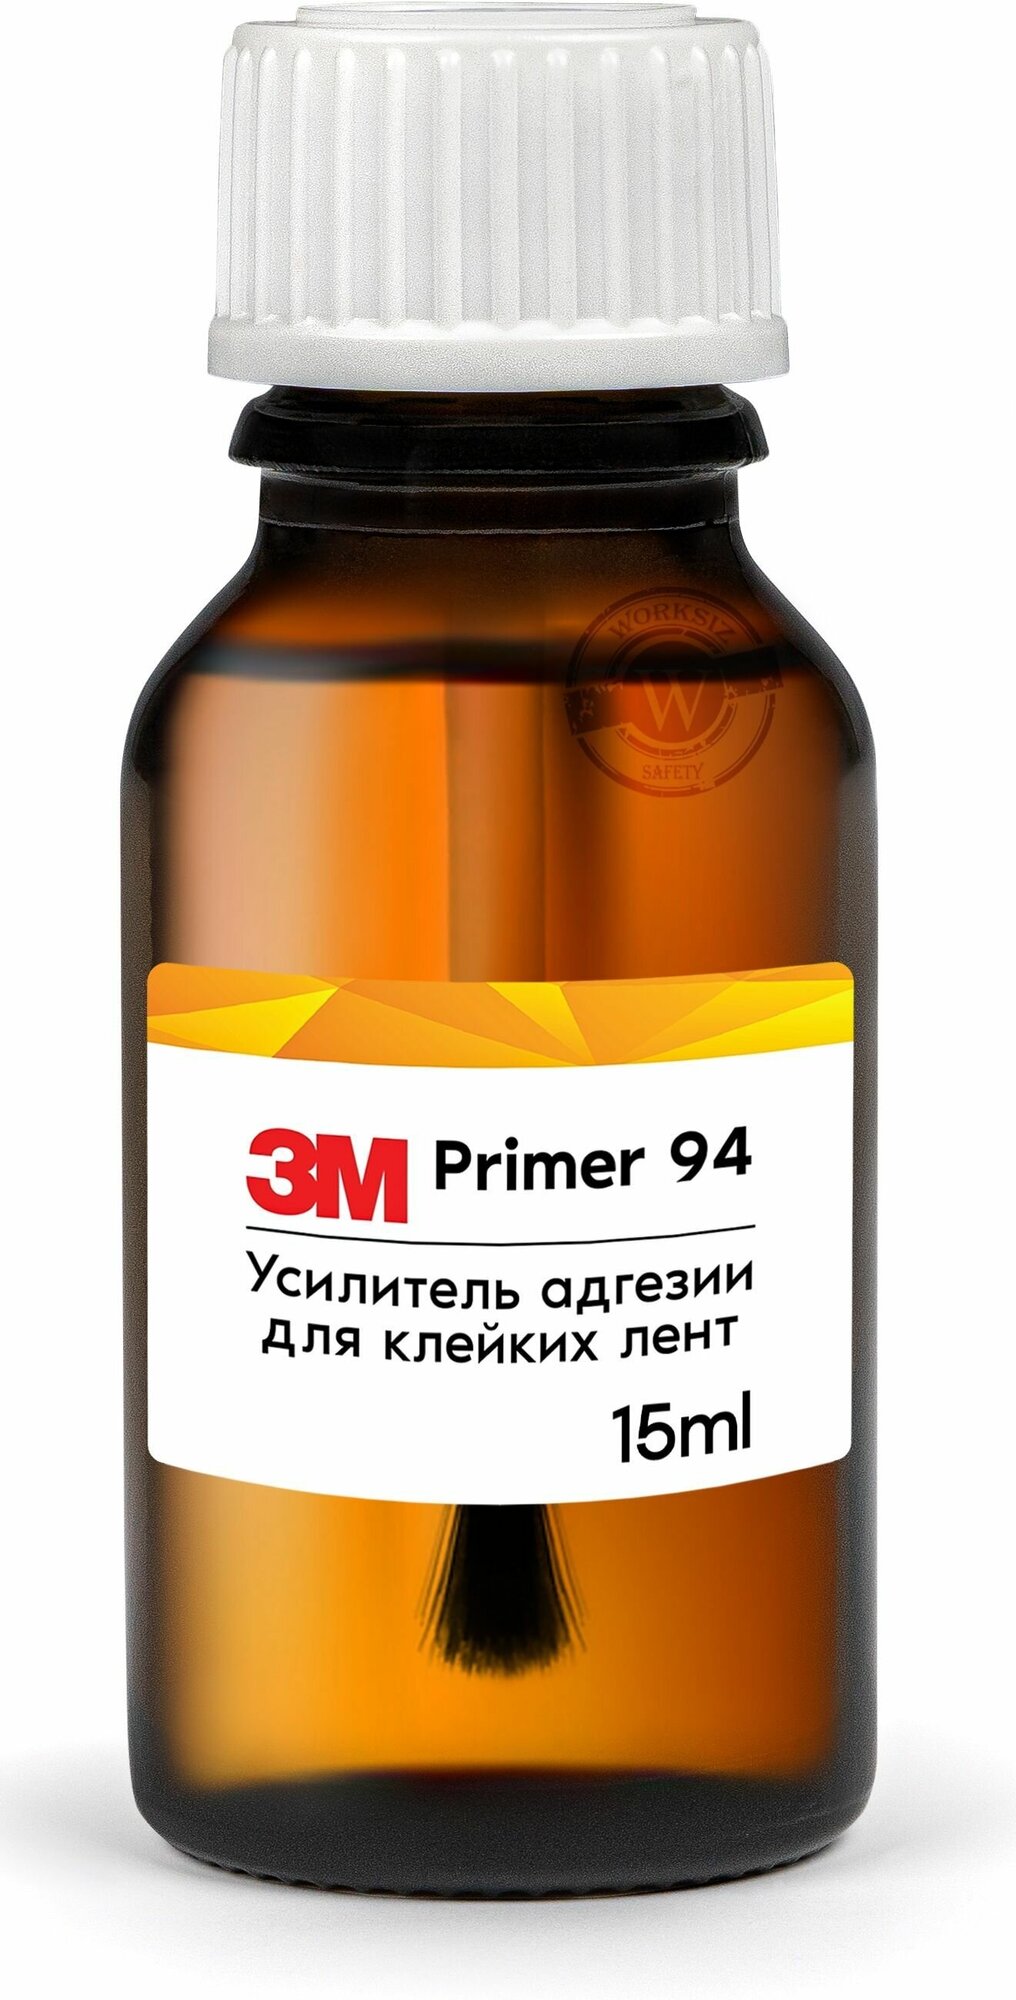 Клей строительный 3M Primer 94 / усилитель ( активатор ) адгезии для клейких лент 3М Праймер 94